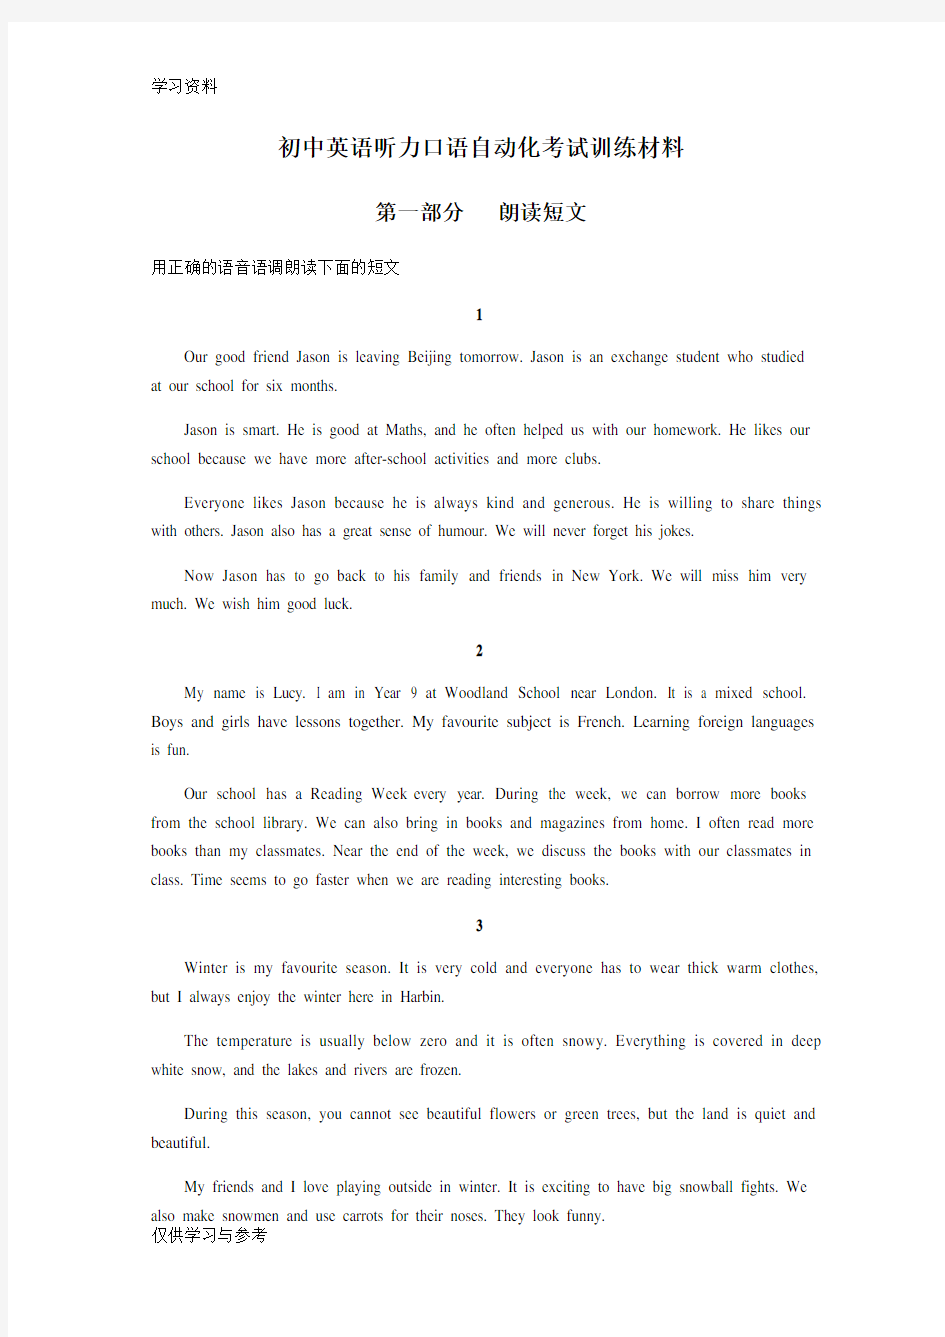 2020年江苏省人机对话考试口语训练材料(朗读短文)培训资料